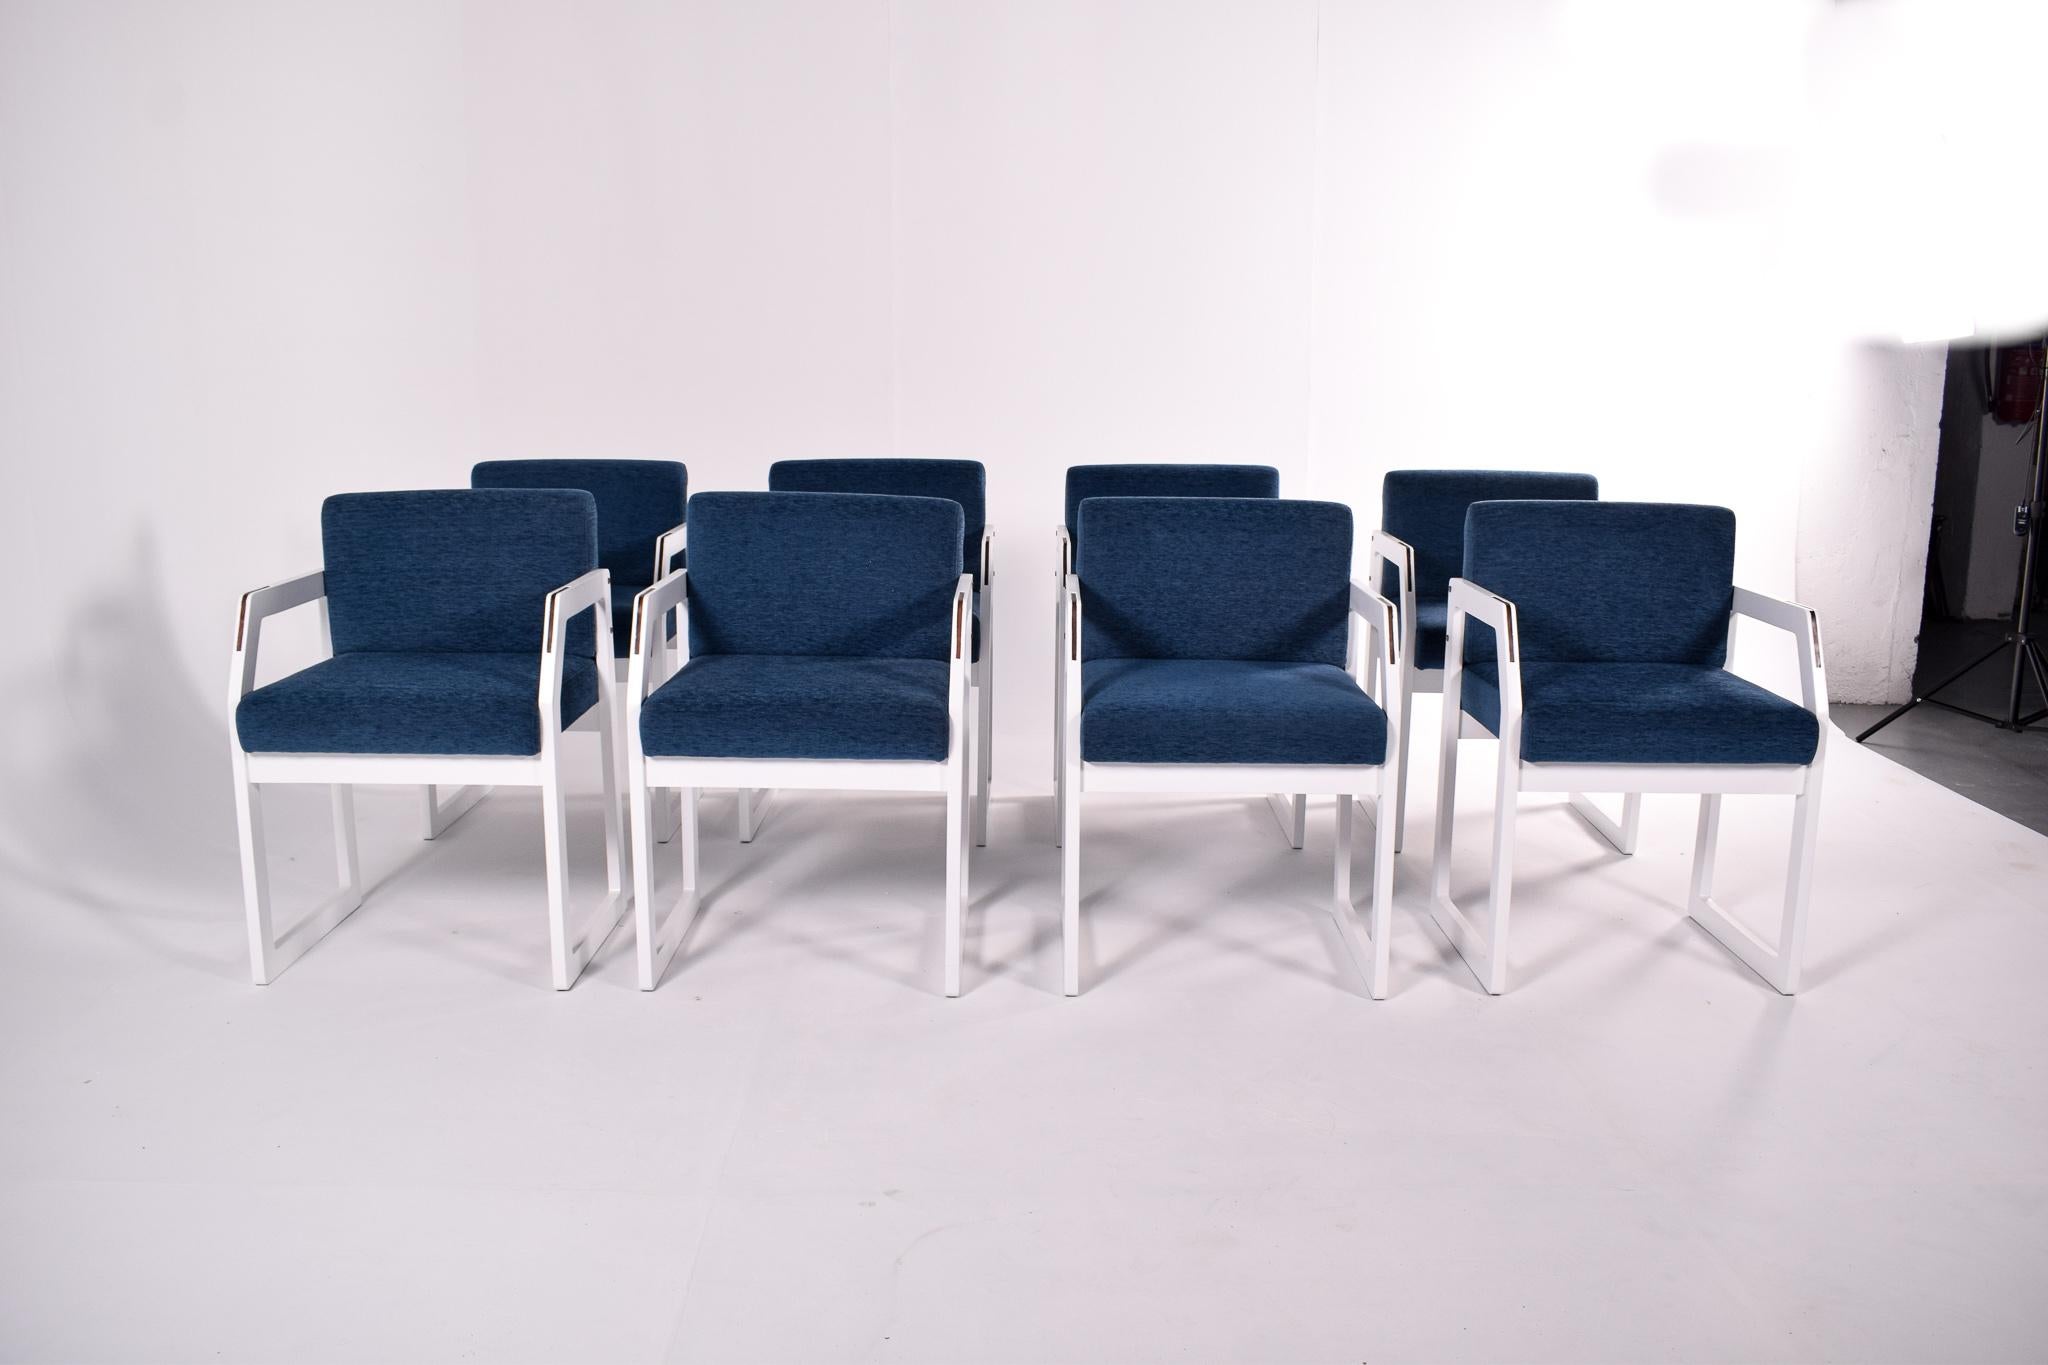 Cet ensemble de chaises de style moderne présente un design qui allie confort et élégance contemporaine. Chaque chaise est dotée d'un dossier et d'une assise revêtus d'un tissu bleu vibrant, offrant une touche de couleur ainsi qu'une expérience